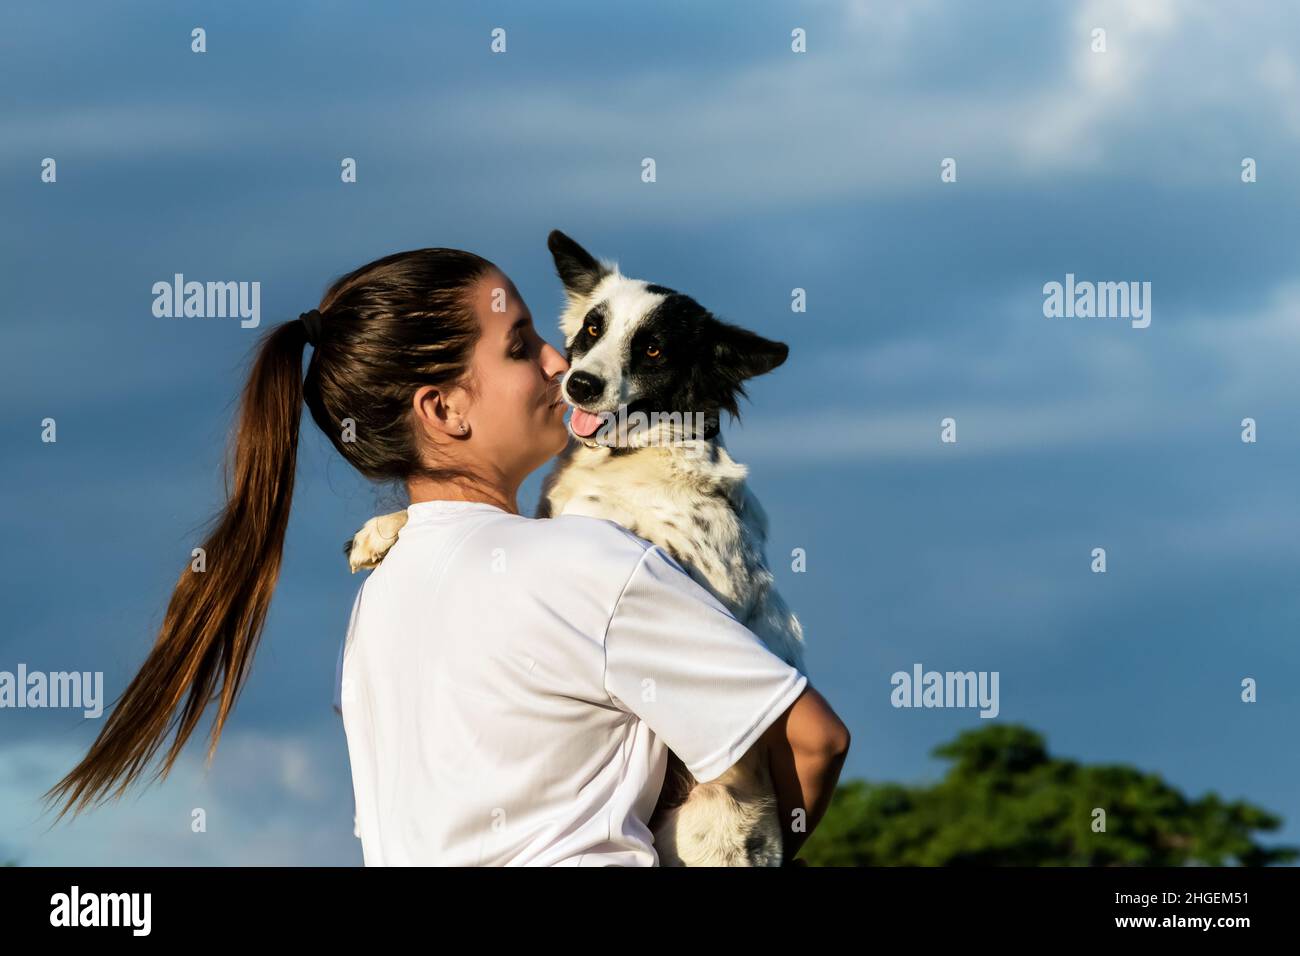 Das lateinische Mädchen hält ihren schwarz-weißen Hundefreund in den Armen und küsst sie. Das Mädchen hat einen Pony-Schwanz. Stockfoto